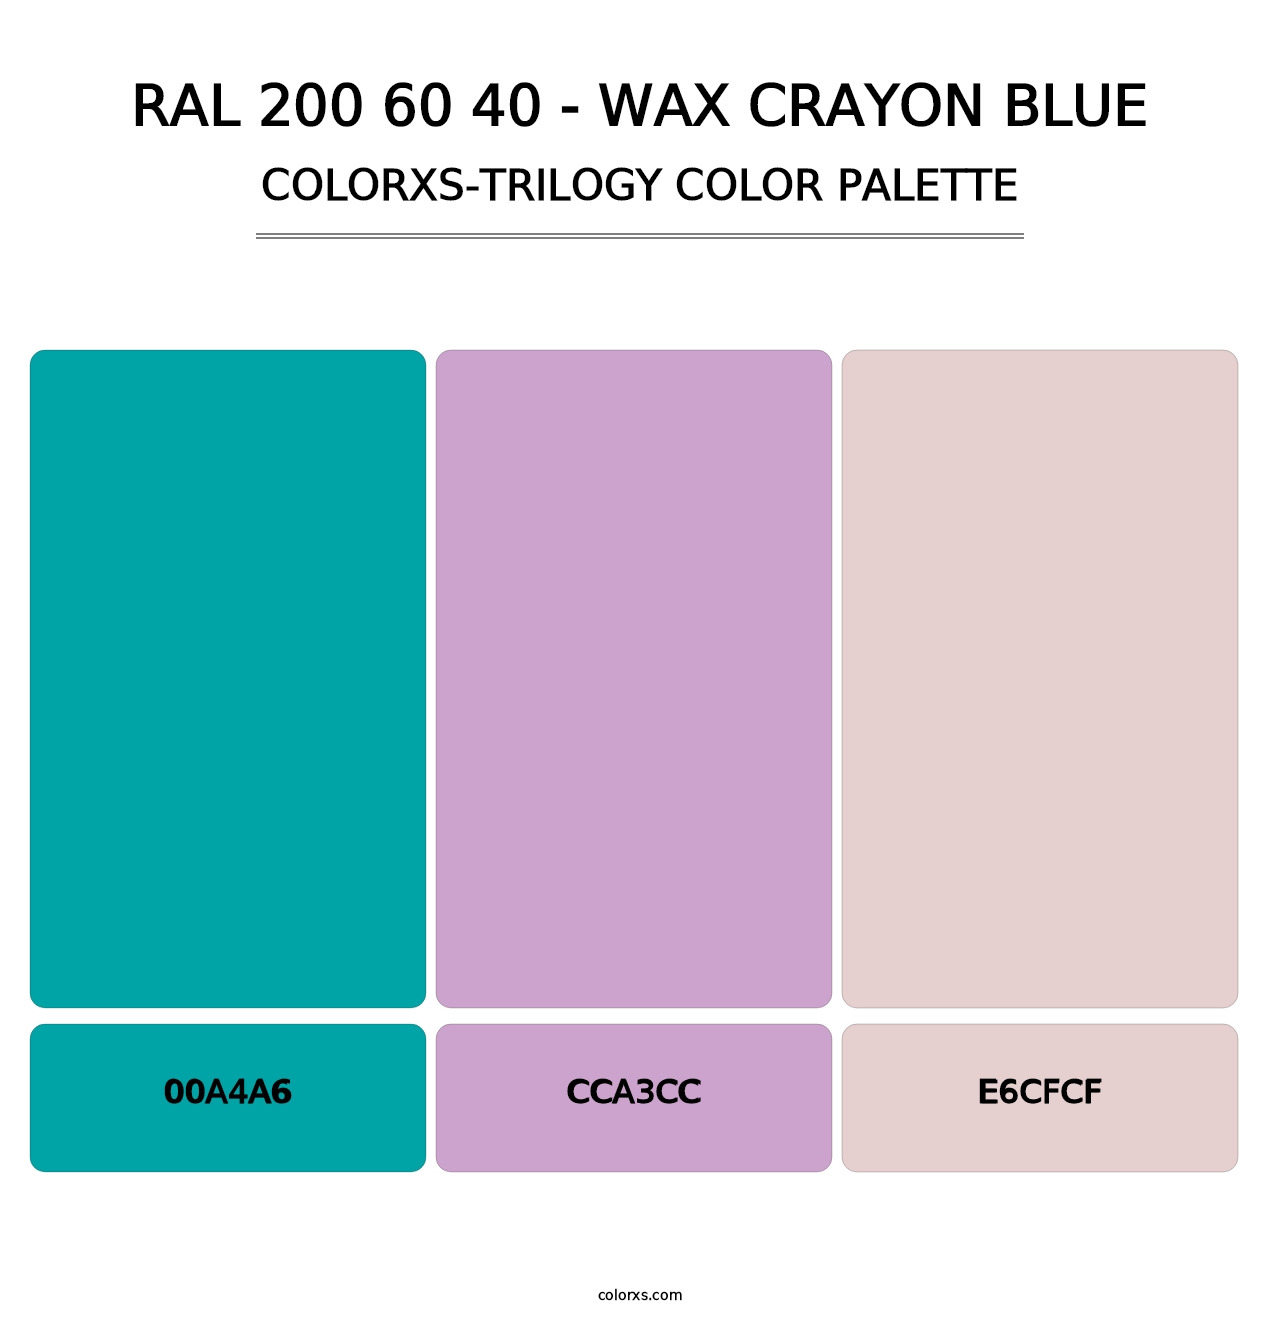 RAL 200 60 40 - Wax Crayon Blue - Colorxs Trilogy Palette